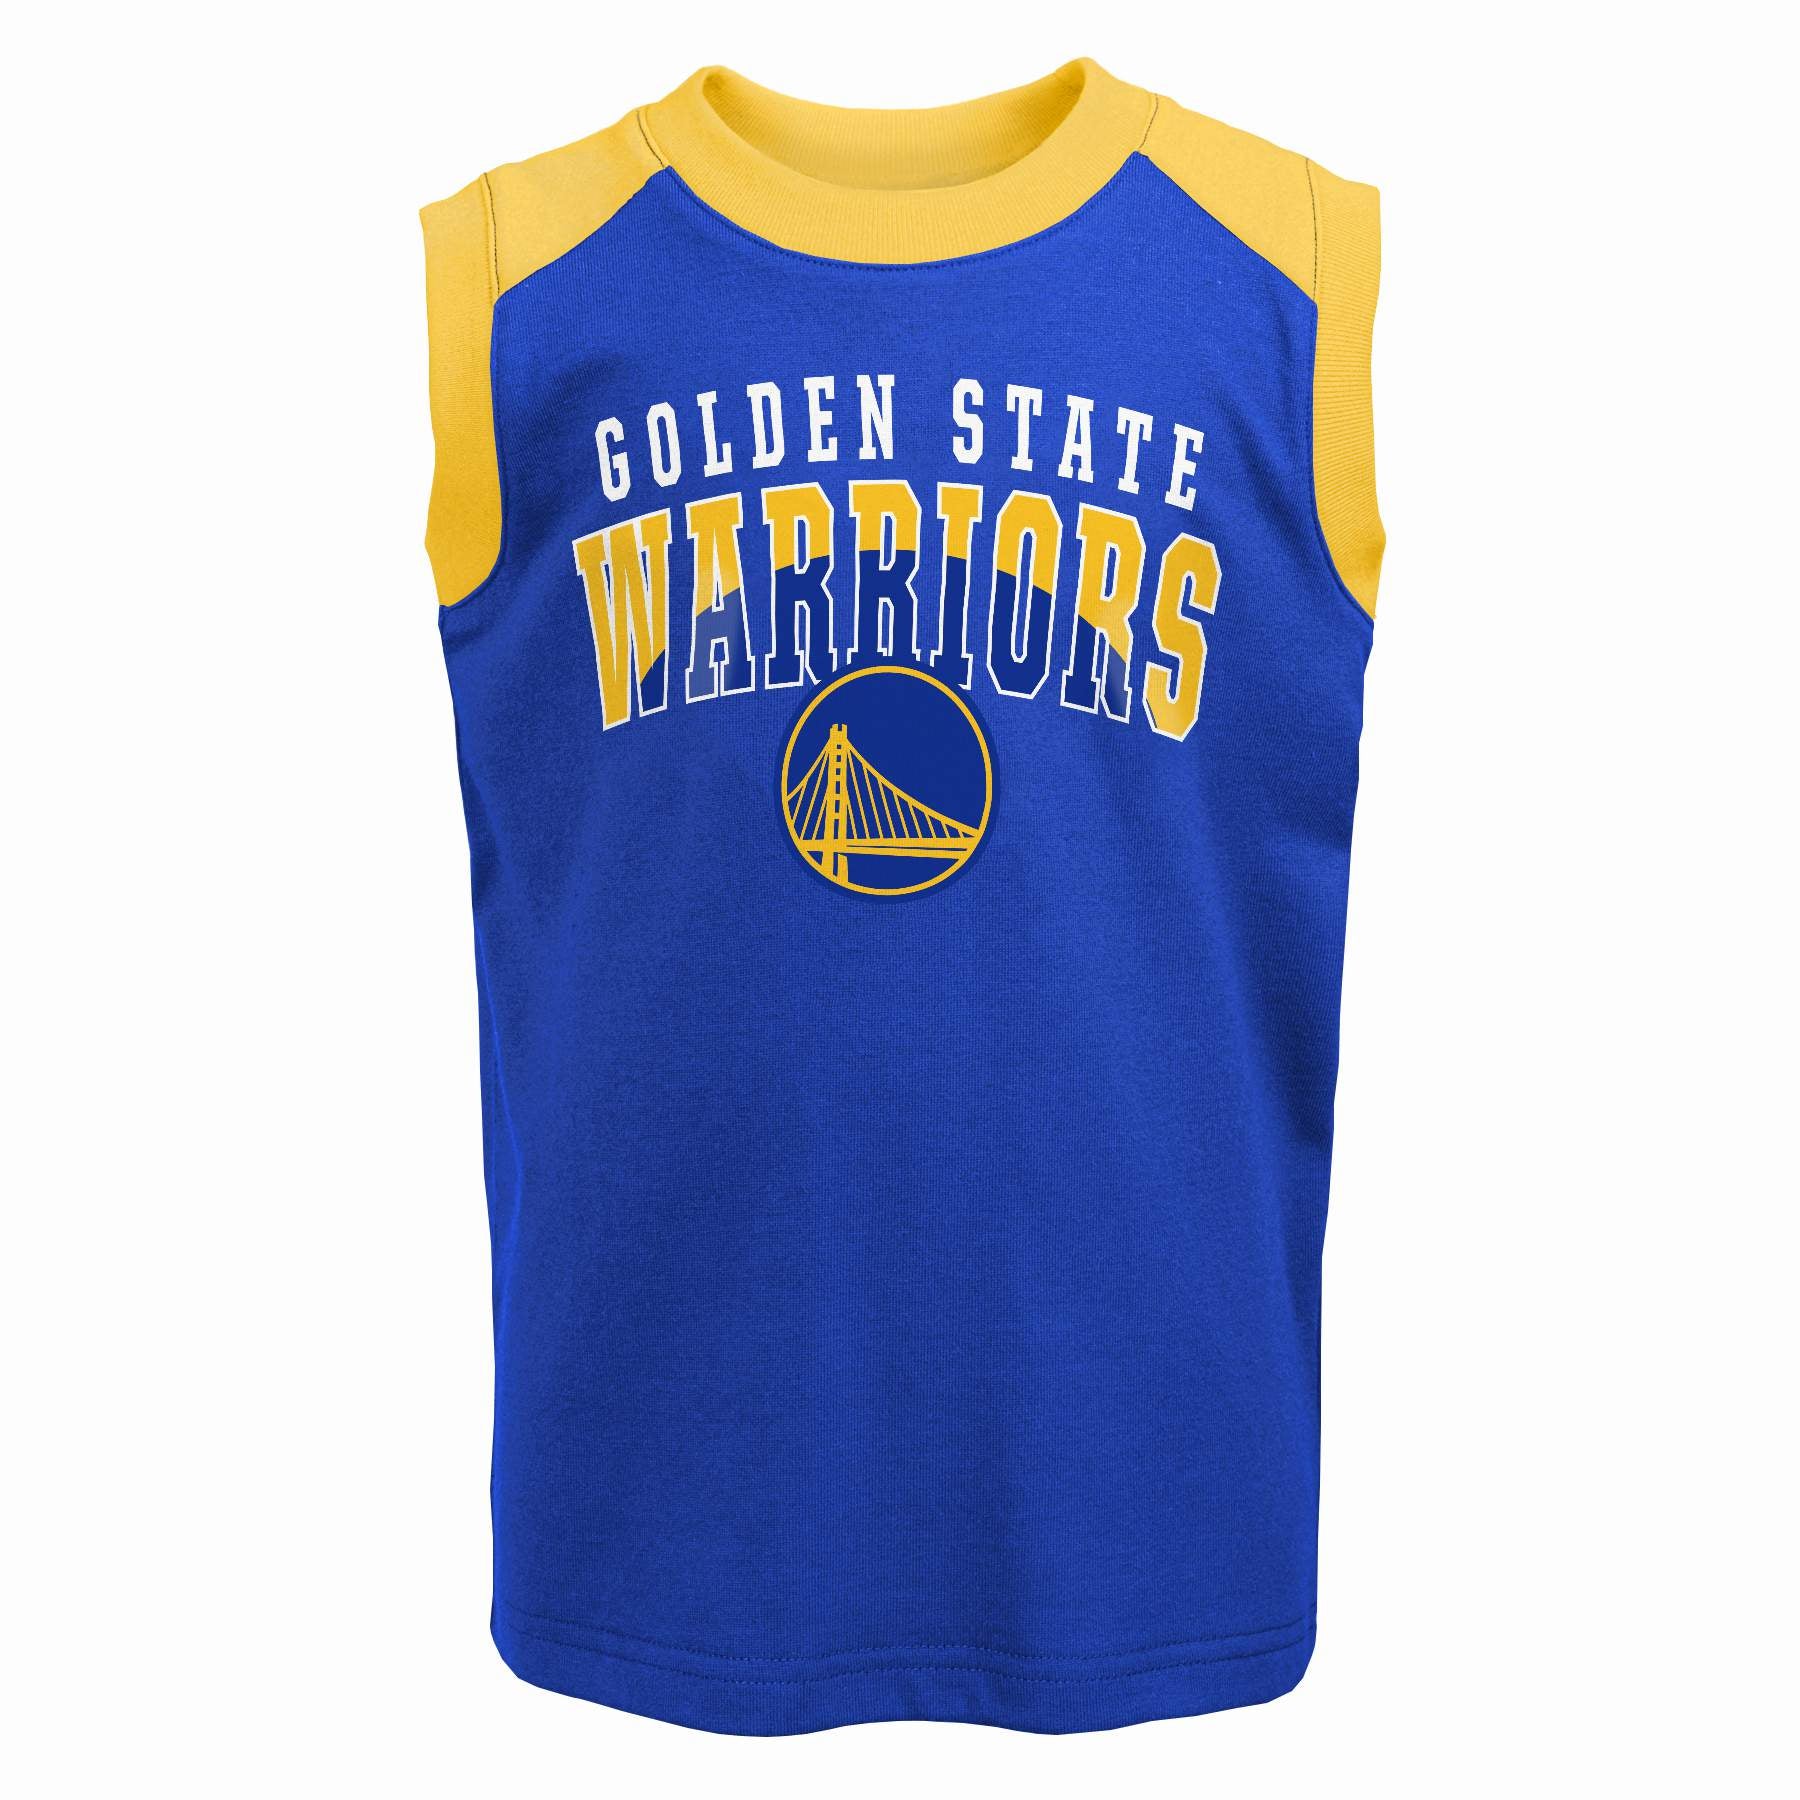 warriors basketball shirt